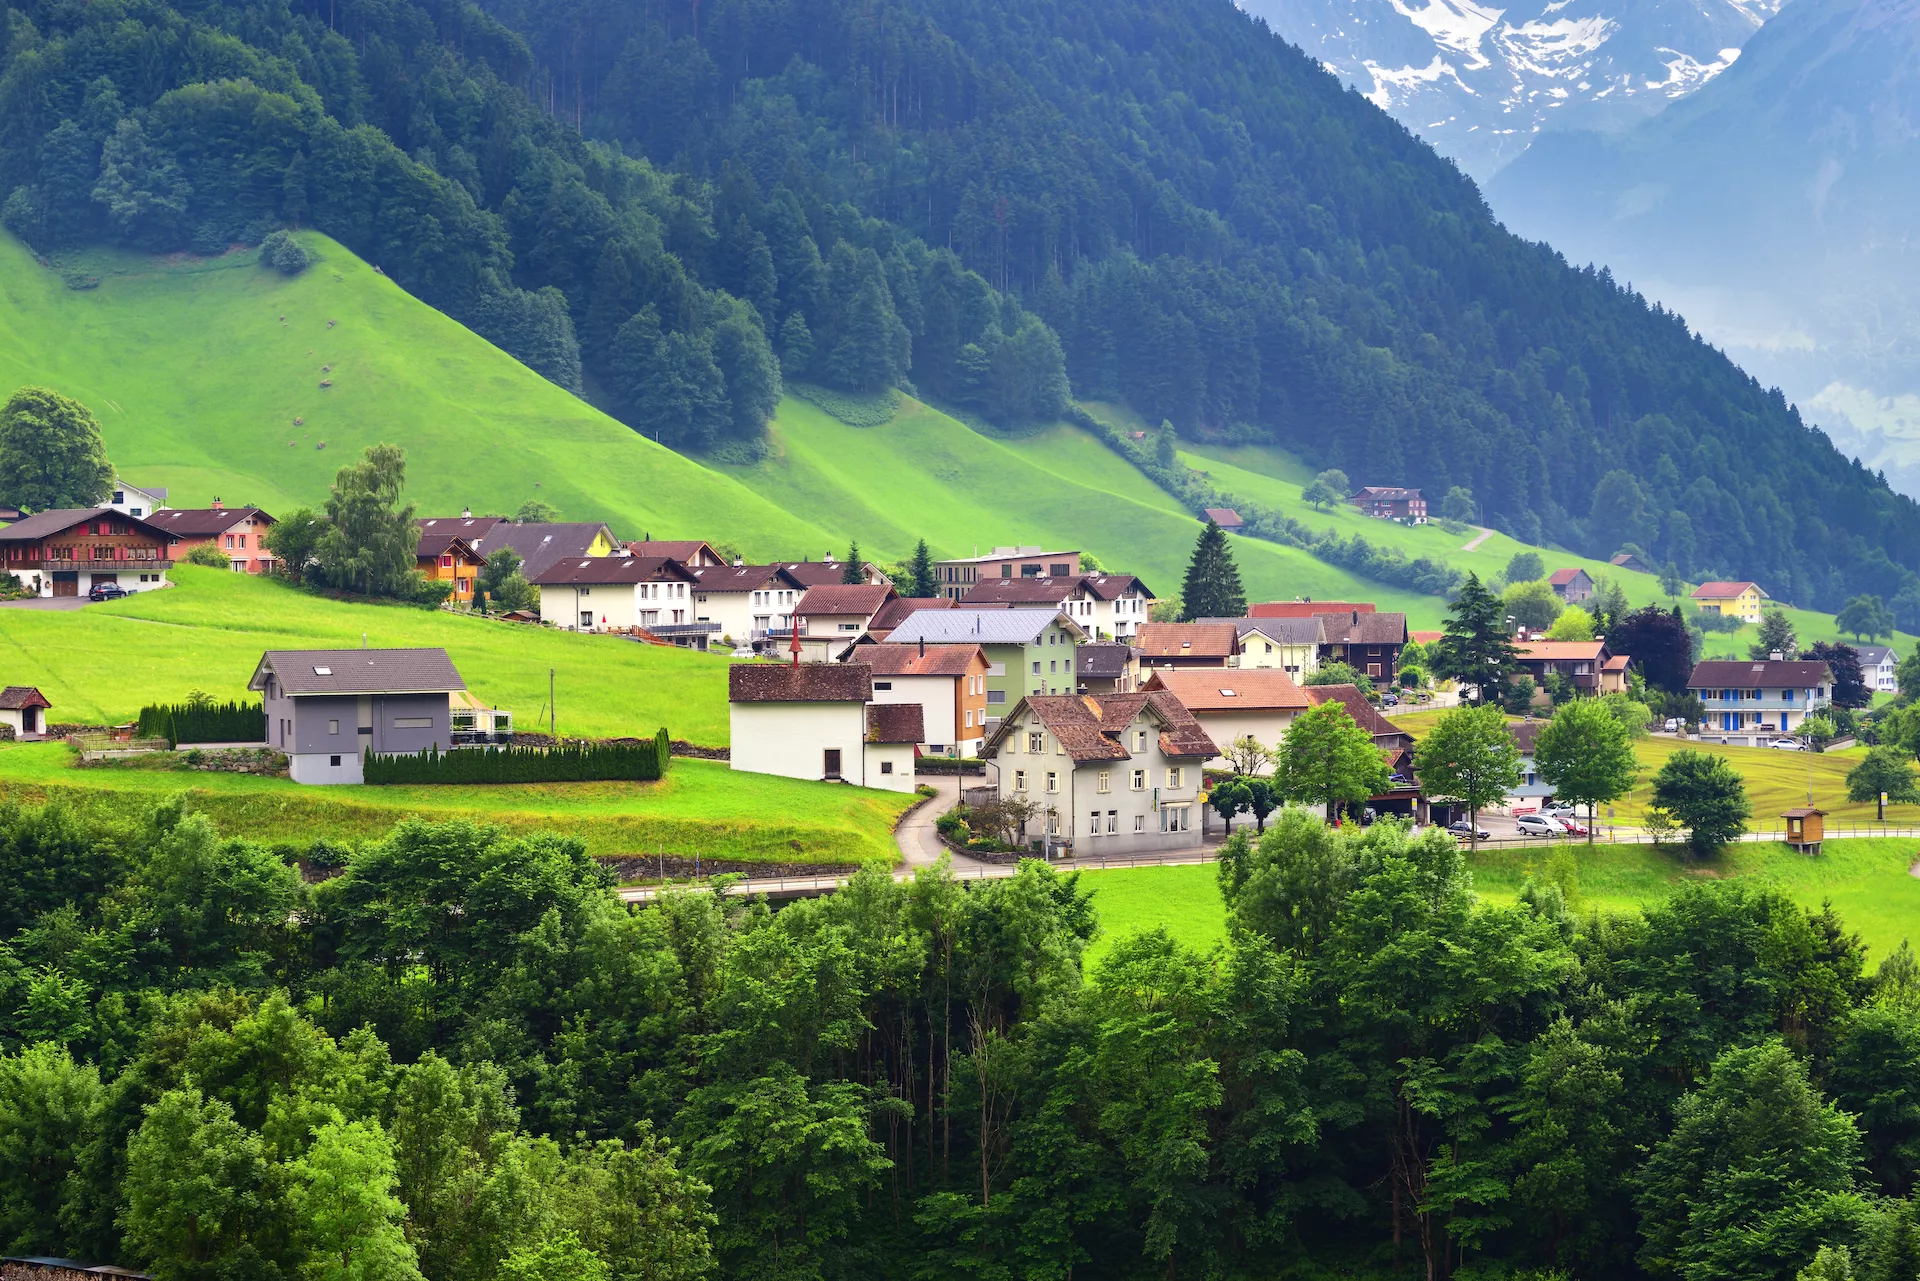 Vakker utsikt over idyllisk fjellandskap i Alpene med tradisjonelle hytter i nærheten av Altdorf by.